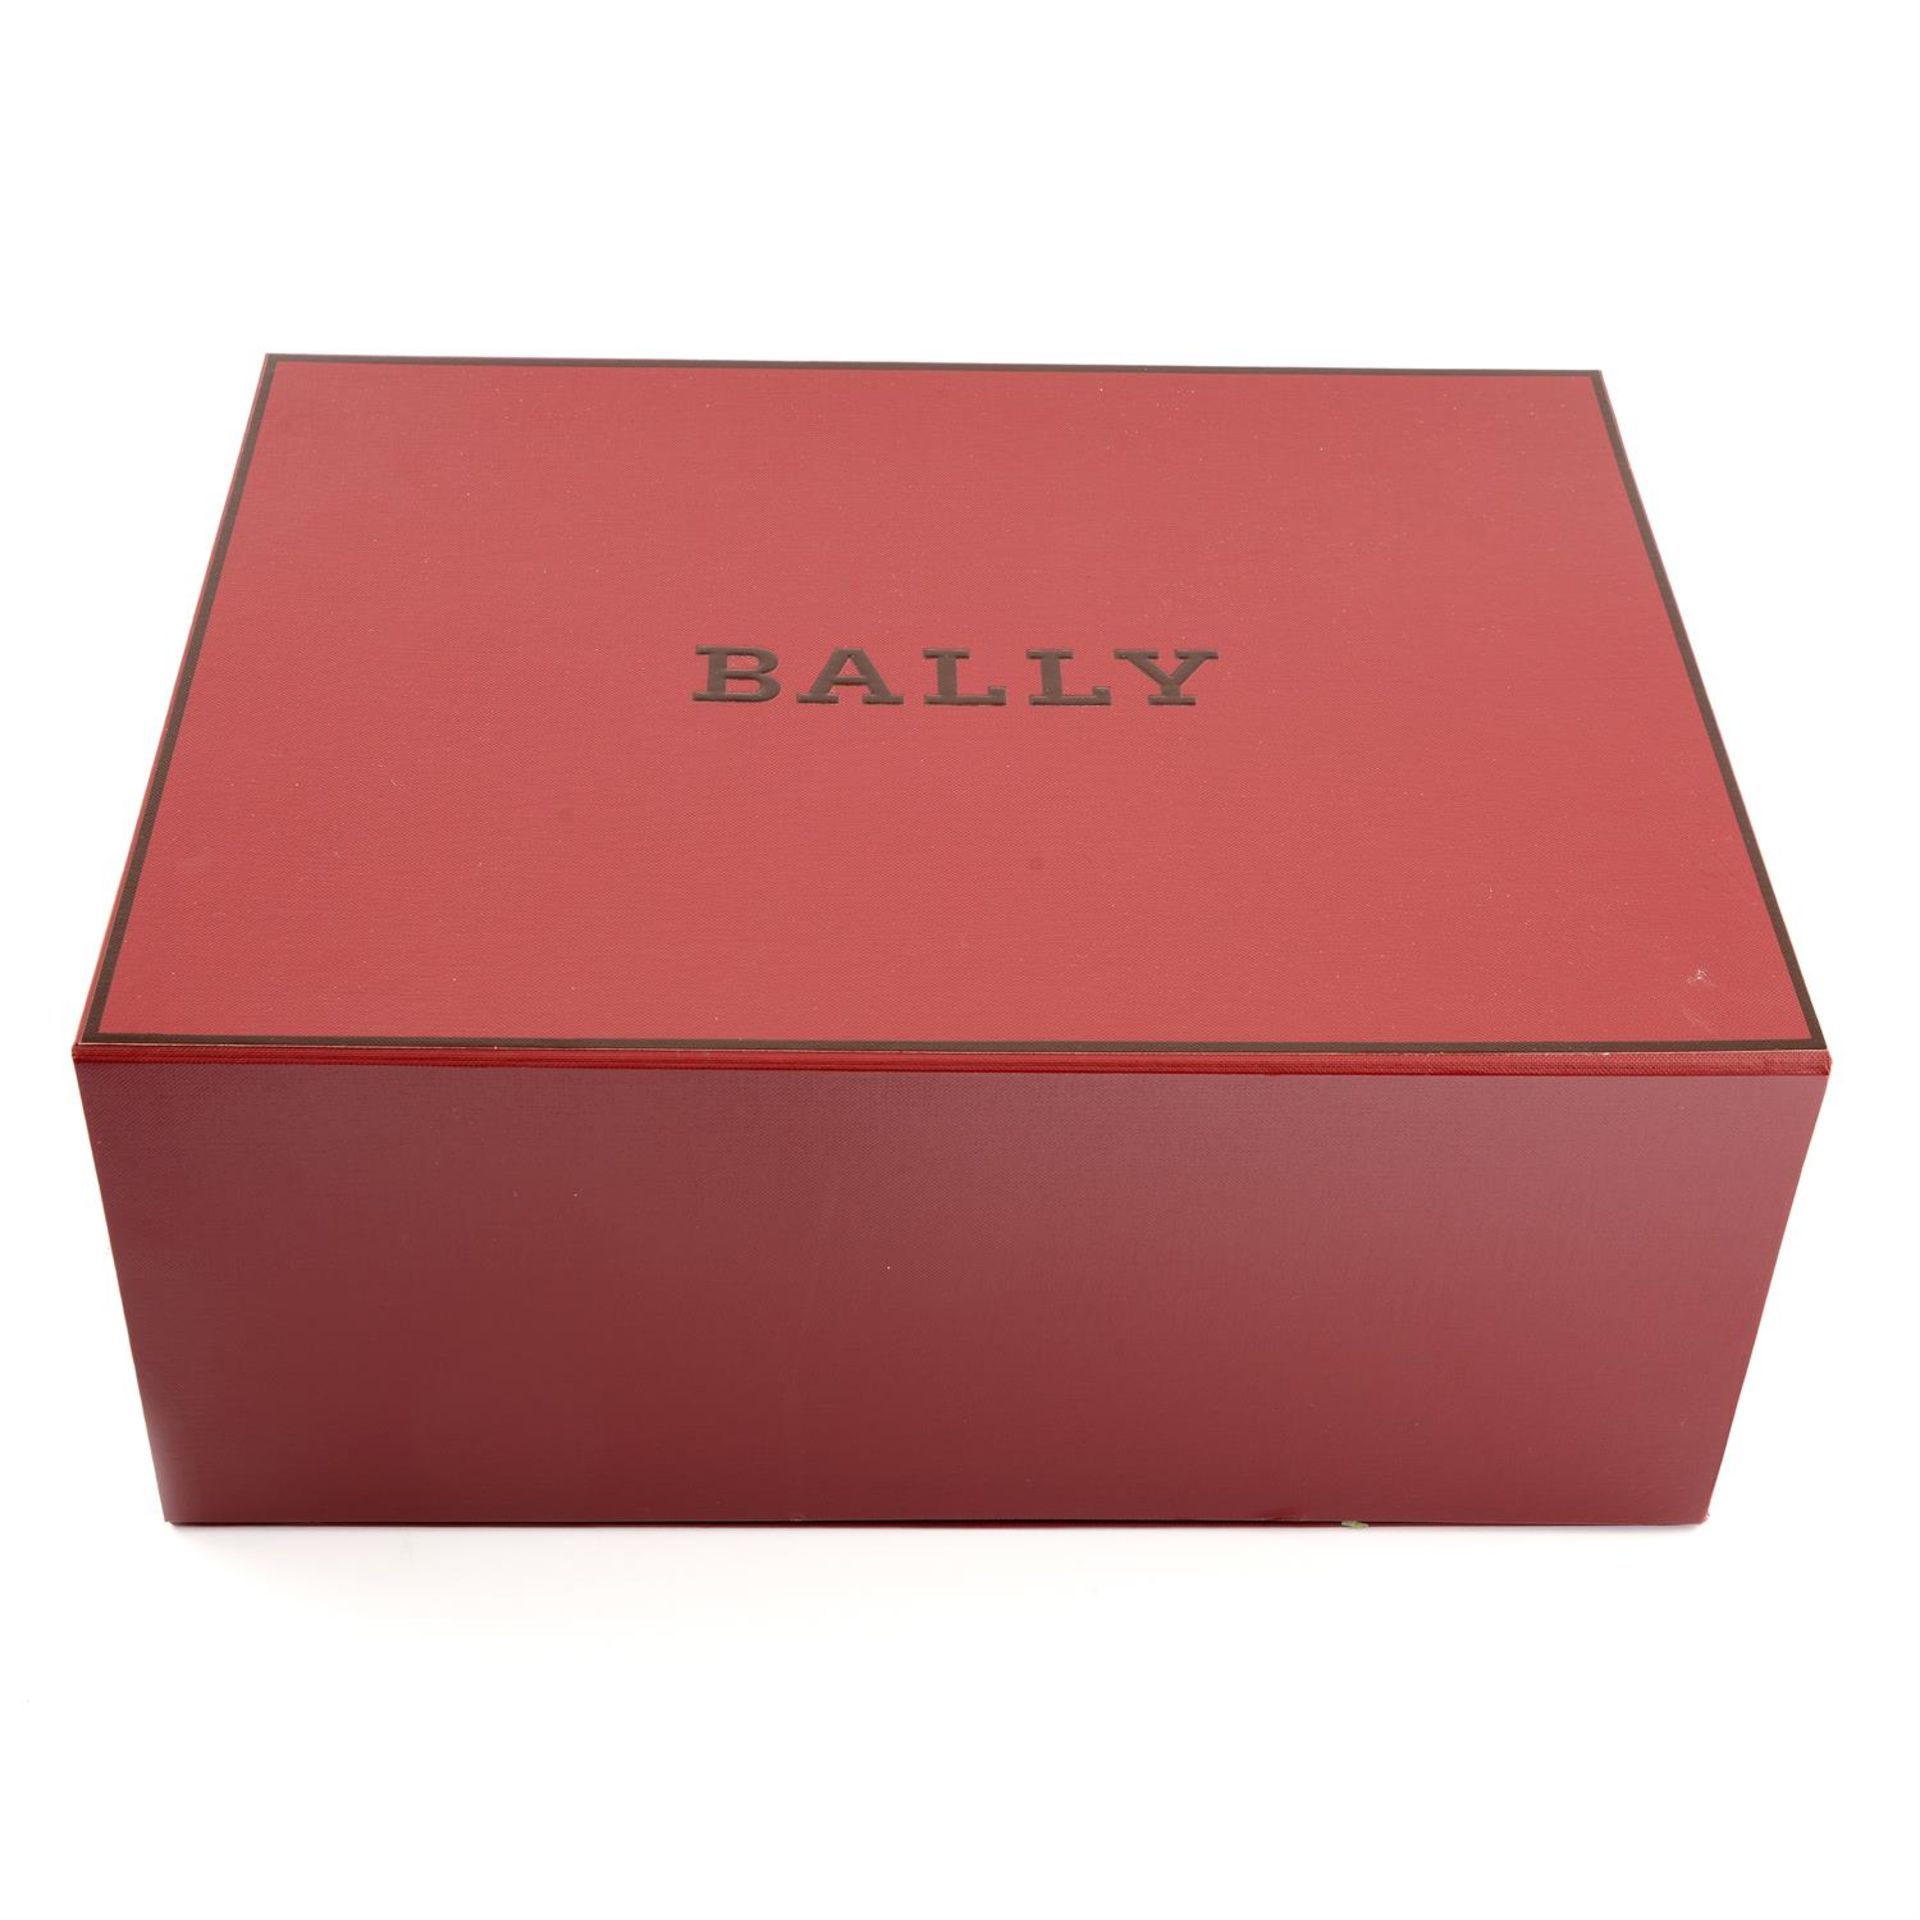 BALLY - a small navy Supra tote bag. - Image 5 of 5